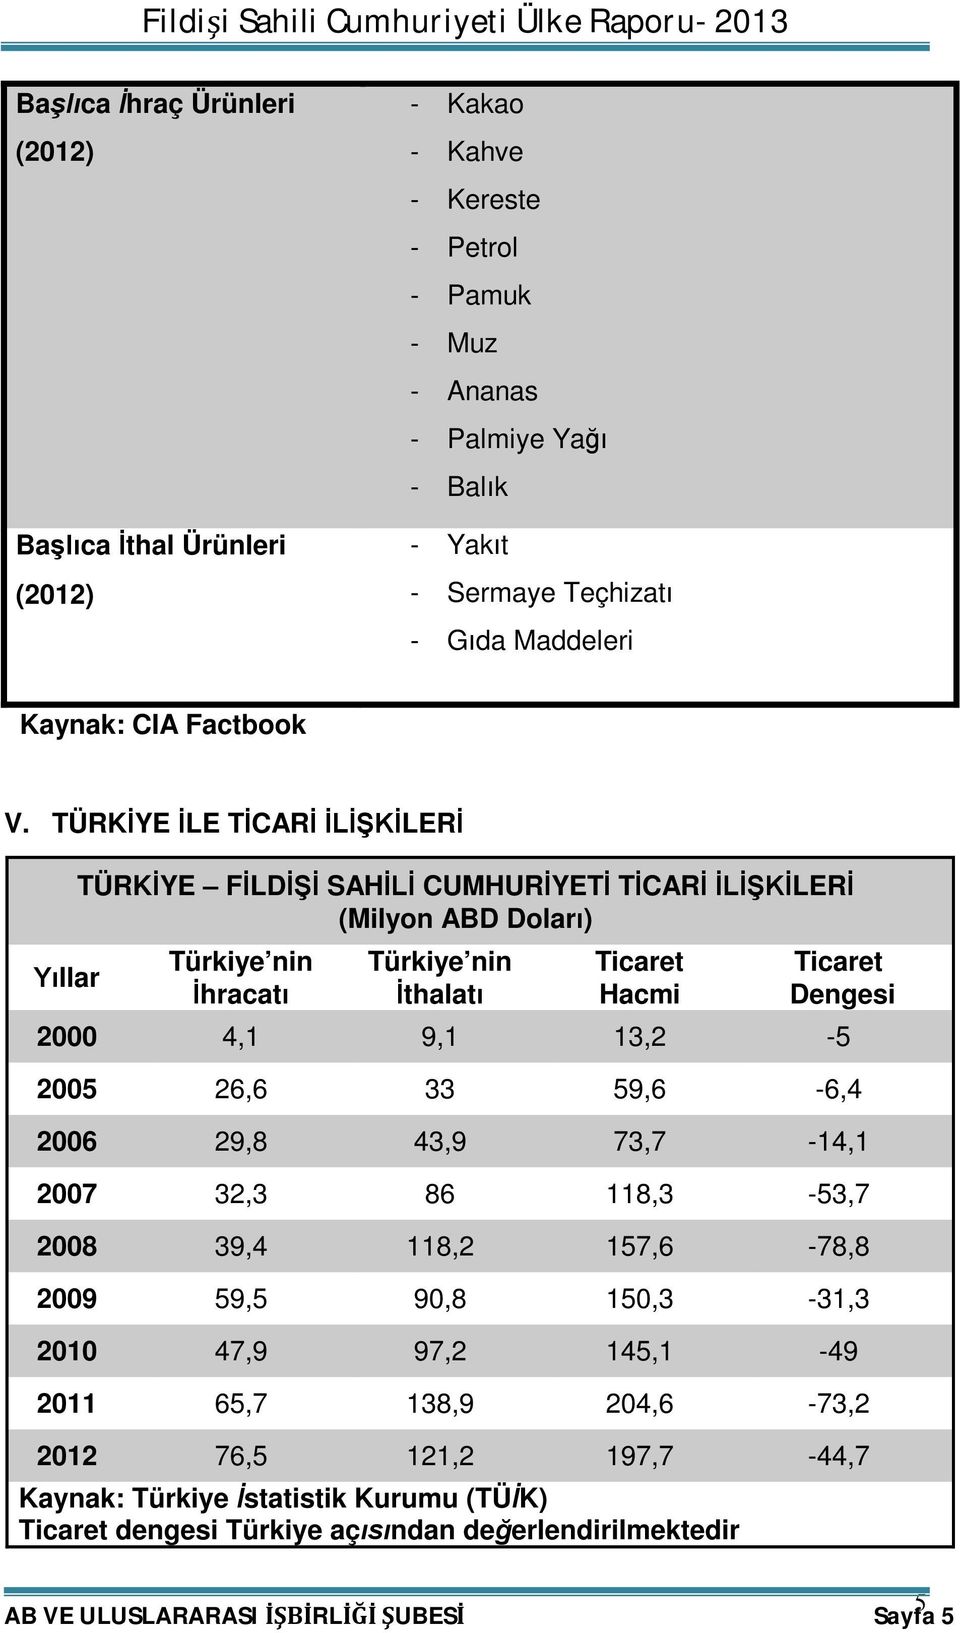 TÜRKİYE İLE TİCARİ İLİŞKİLERİ Yıllar TÜRKİYE FİLDİŞİ SAHİLİ CUMHURİYETİ TİCARİ İLİŞKİLERİ (Milyon ABD Doları) Türkiye nin İhracatı Türkiye nin İthalatı Ticaret Hacmi Ticaret Dengesi 2000